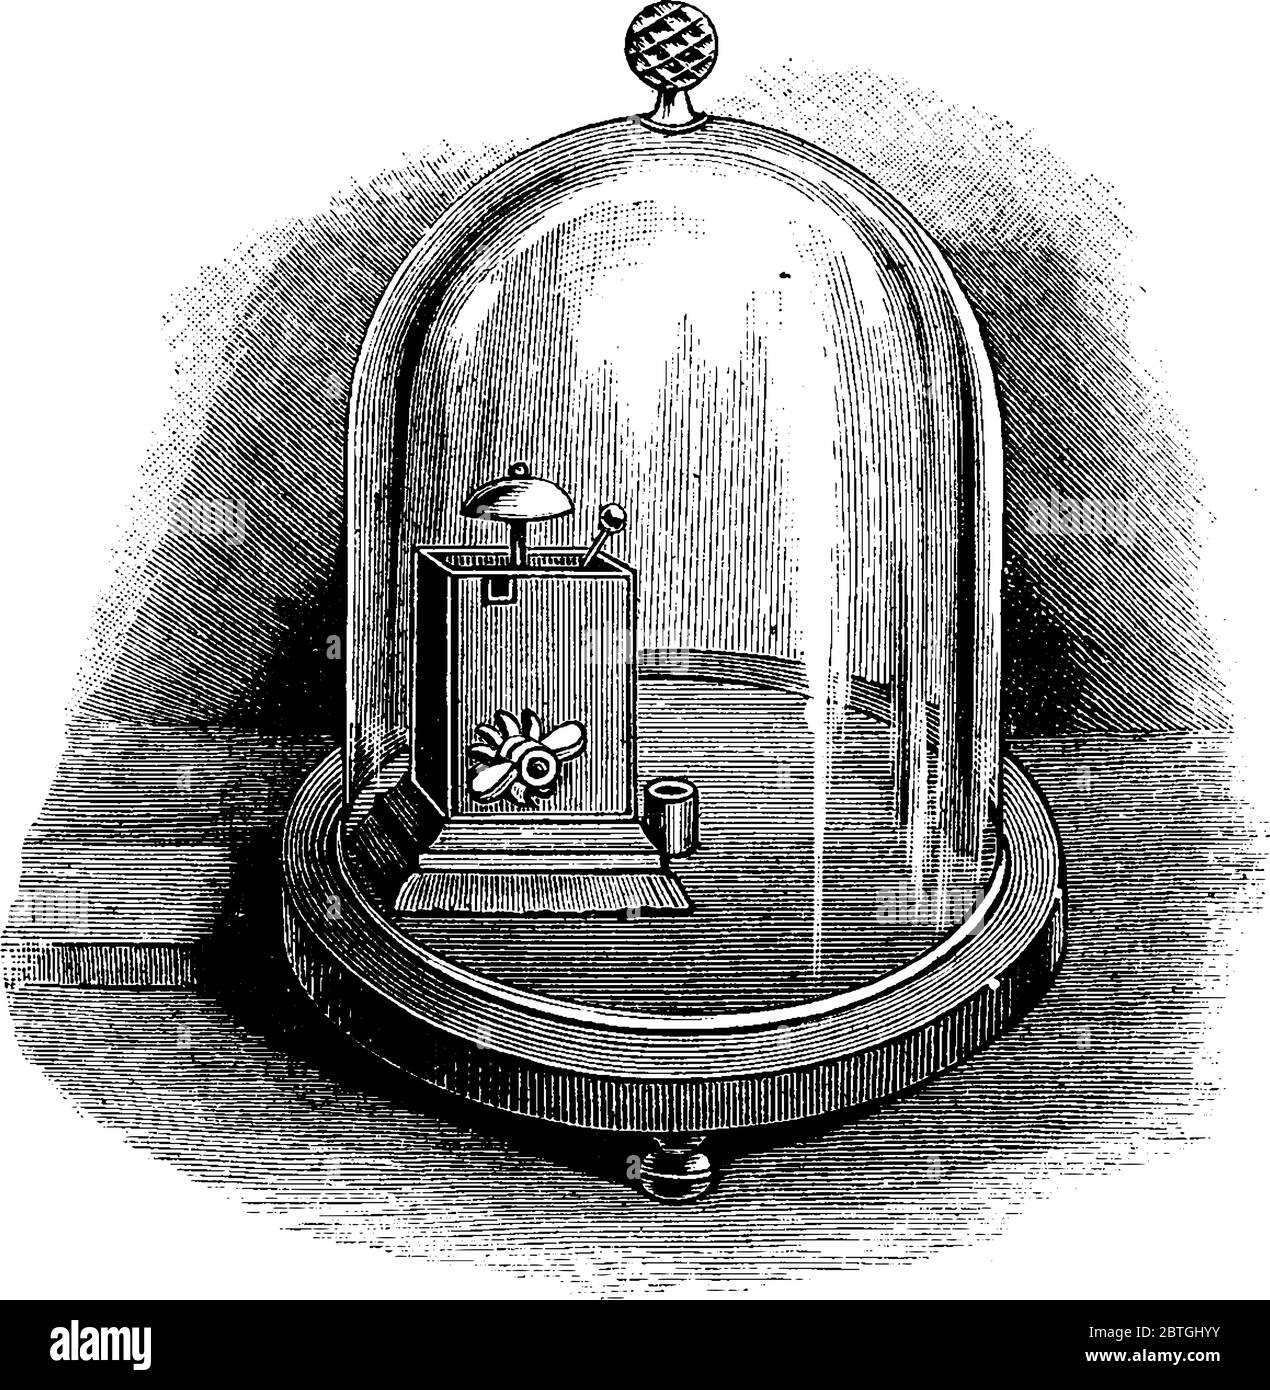 Schematische Darstellung eines frühen Alarms, der zu einem bestimmten Zeitpunkt einen Ton erzeugt, eine Vintage-Zeichnung oder eine Gravur. Stock Vektor